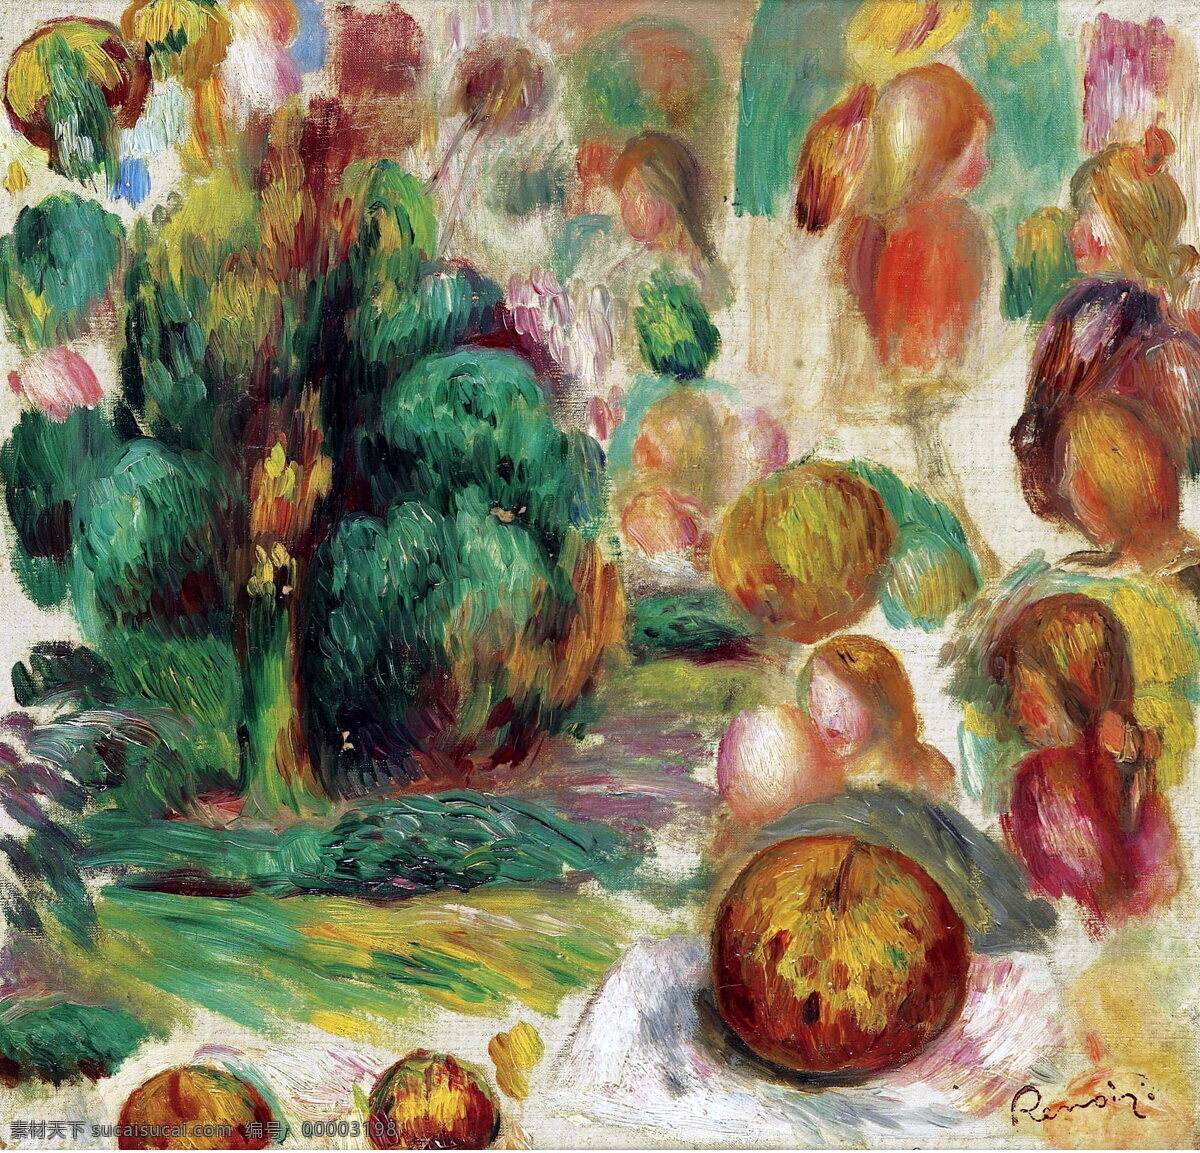 抽象 绘画 绘画书法 水果 文化艺术 油画 油画抽象 油画风景 水果设计素材 水果模板下载